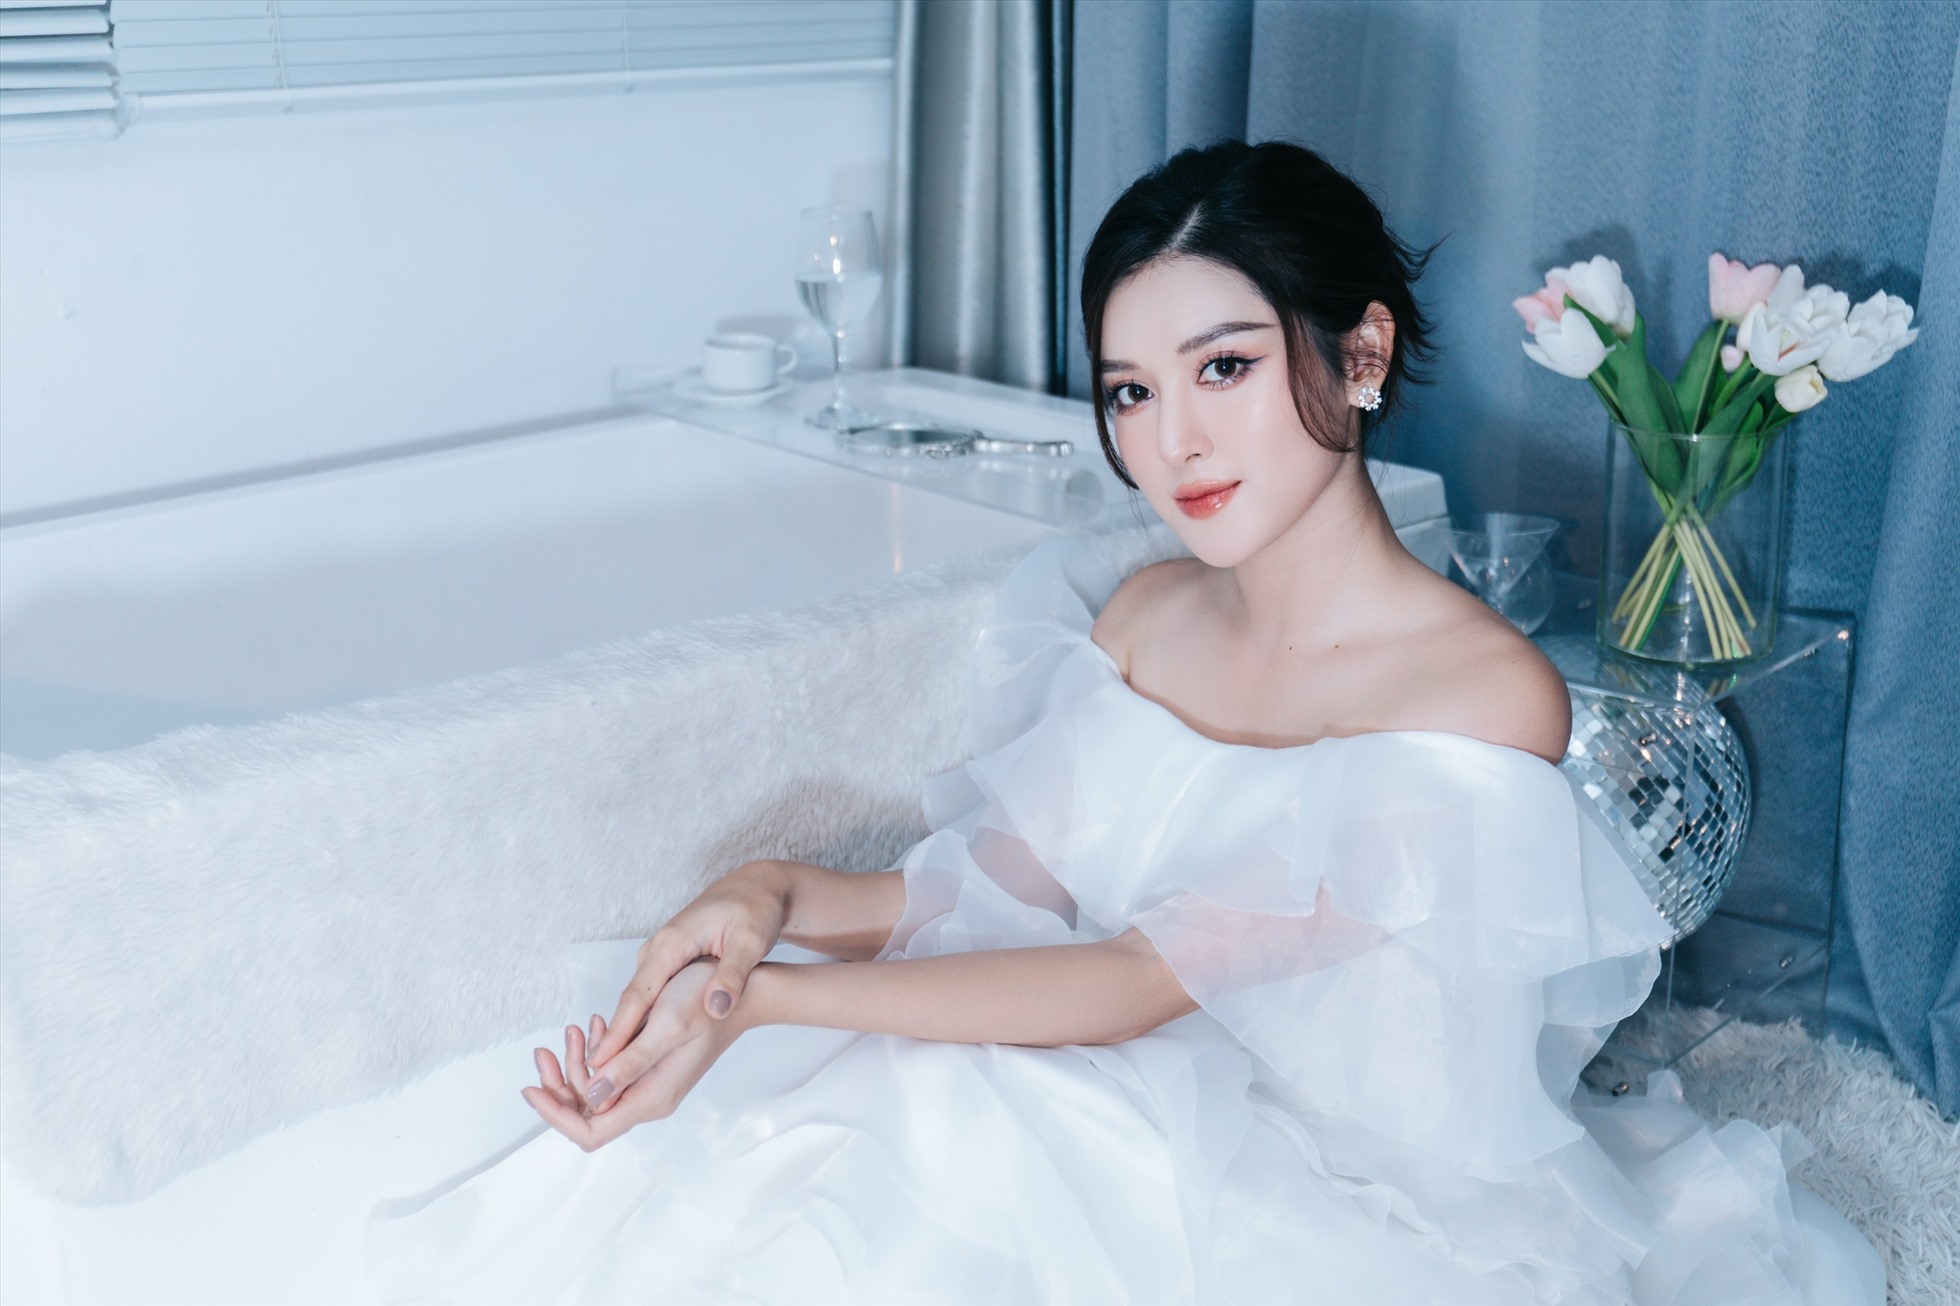 Người đẹp diện những chiếc đầm của NTK Lê Thanh Hòa, chọn lối trang điểm tông hồng ngọt ngào, kết hợp mái tóc gợn sóng bồng bềnh, giúp thêm phần cuốn hút.